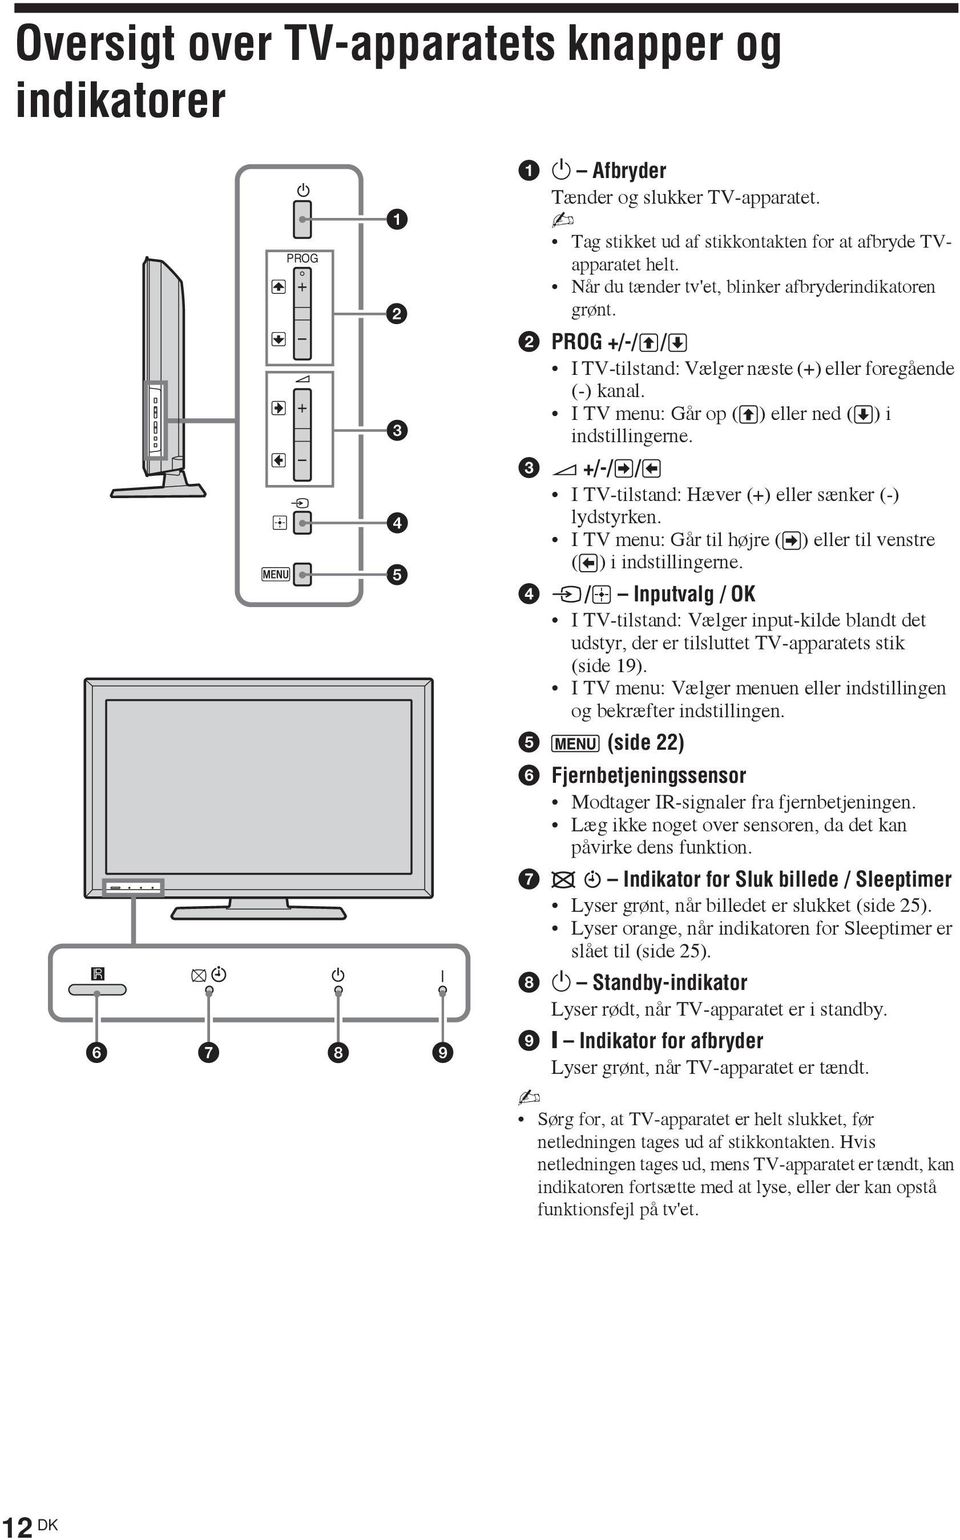 3 2 +/-/ / I TV-tilstand: Hæver (+) eller sænker (-) lydstyrken. I TV menu: Går til højre ( ) eller til venstre ( ) i indstillingerne.